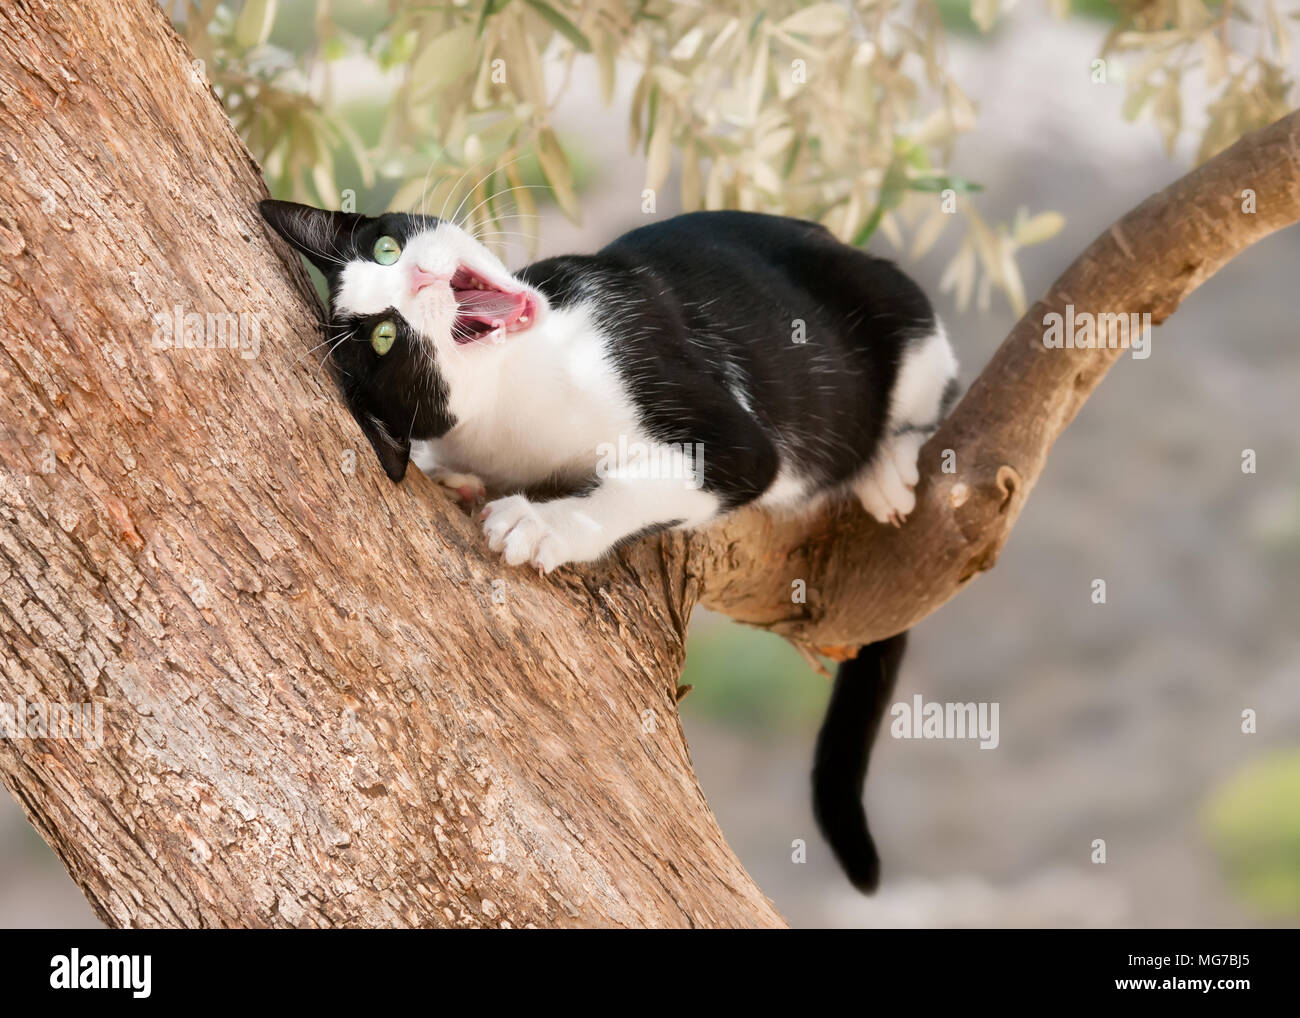 Carino giovane cat, tuxedo pattern in bianco e nero bicolor, giocando e strofinando il suo viso con la bocca aperta su un ramo di un albero di olivo, Cipro Foto Stock